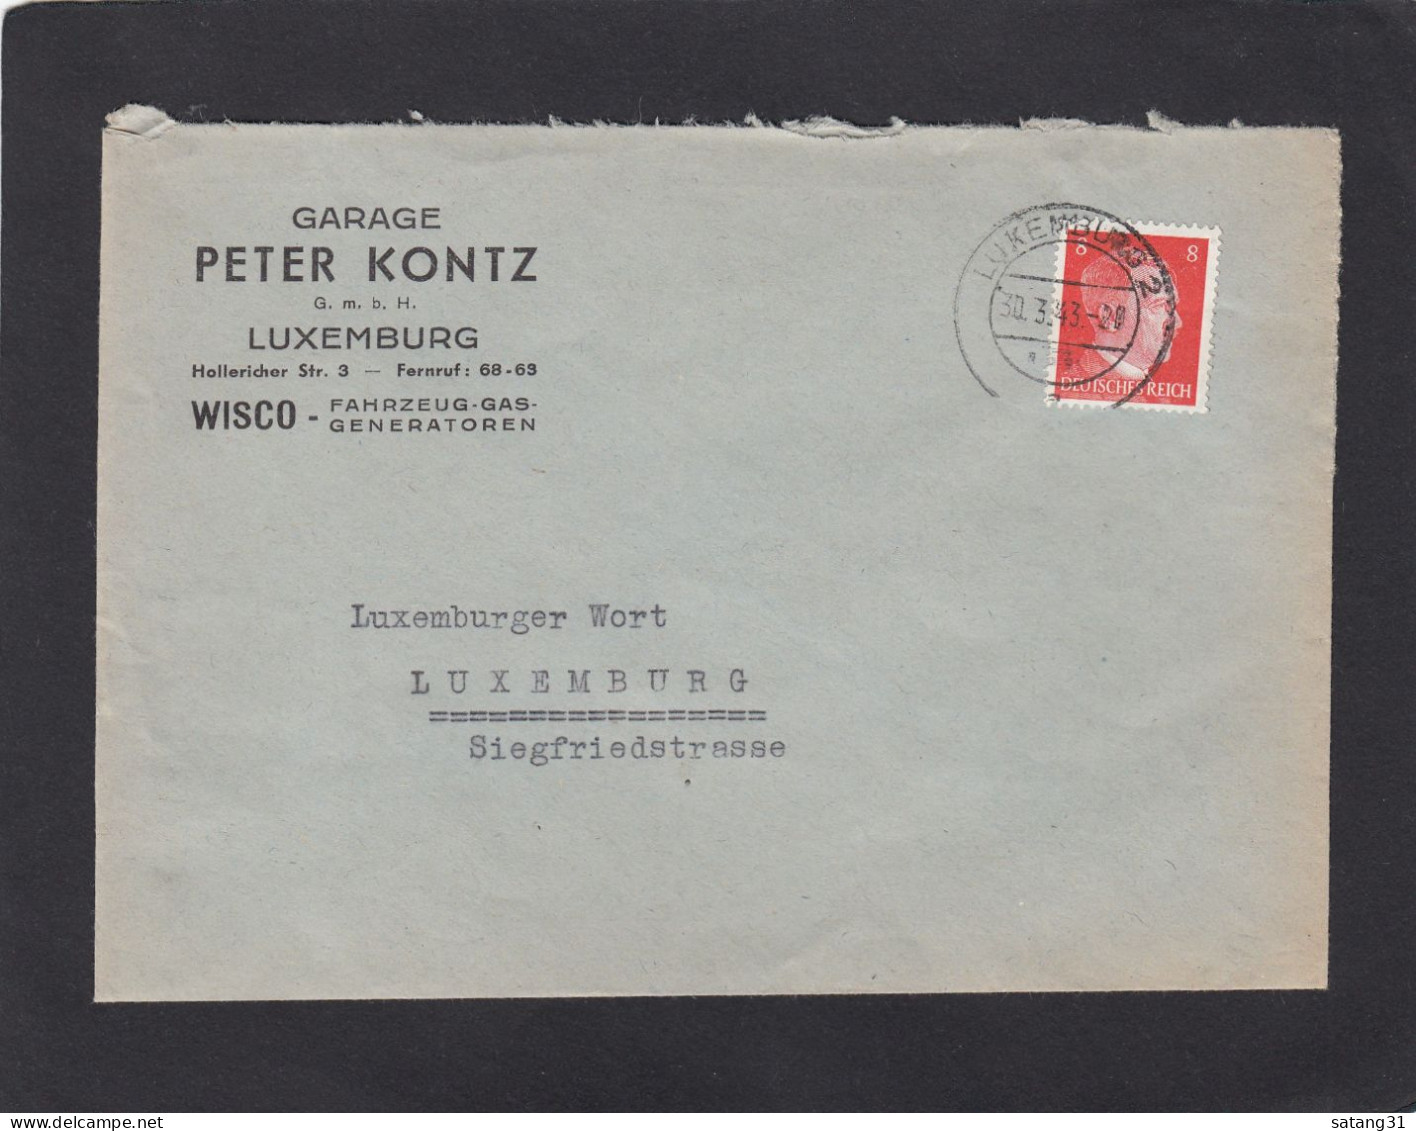 GARAGE PETER KONTZ G.M.B.H., LUXEMBURG. WISCO - FAHRZEUG-GAS-GENERATOREN. - 1940-1944 Deutsche Besatzung